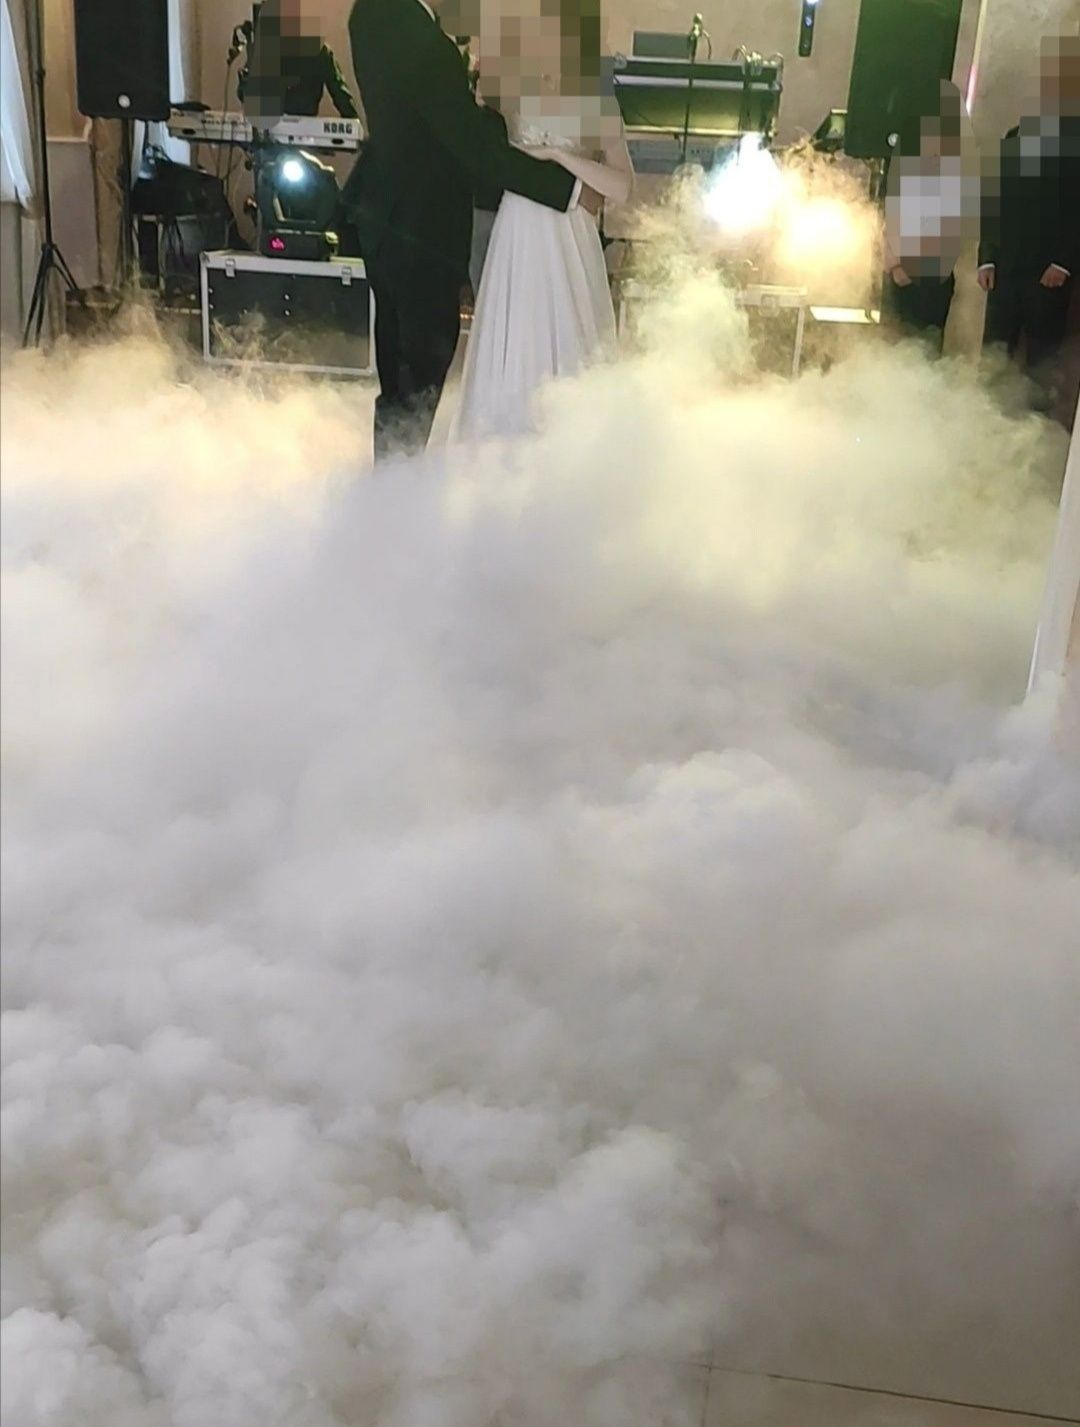 Ciężki dym taniec w chmurach